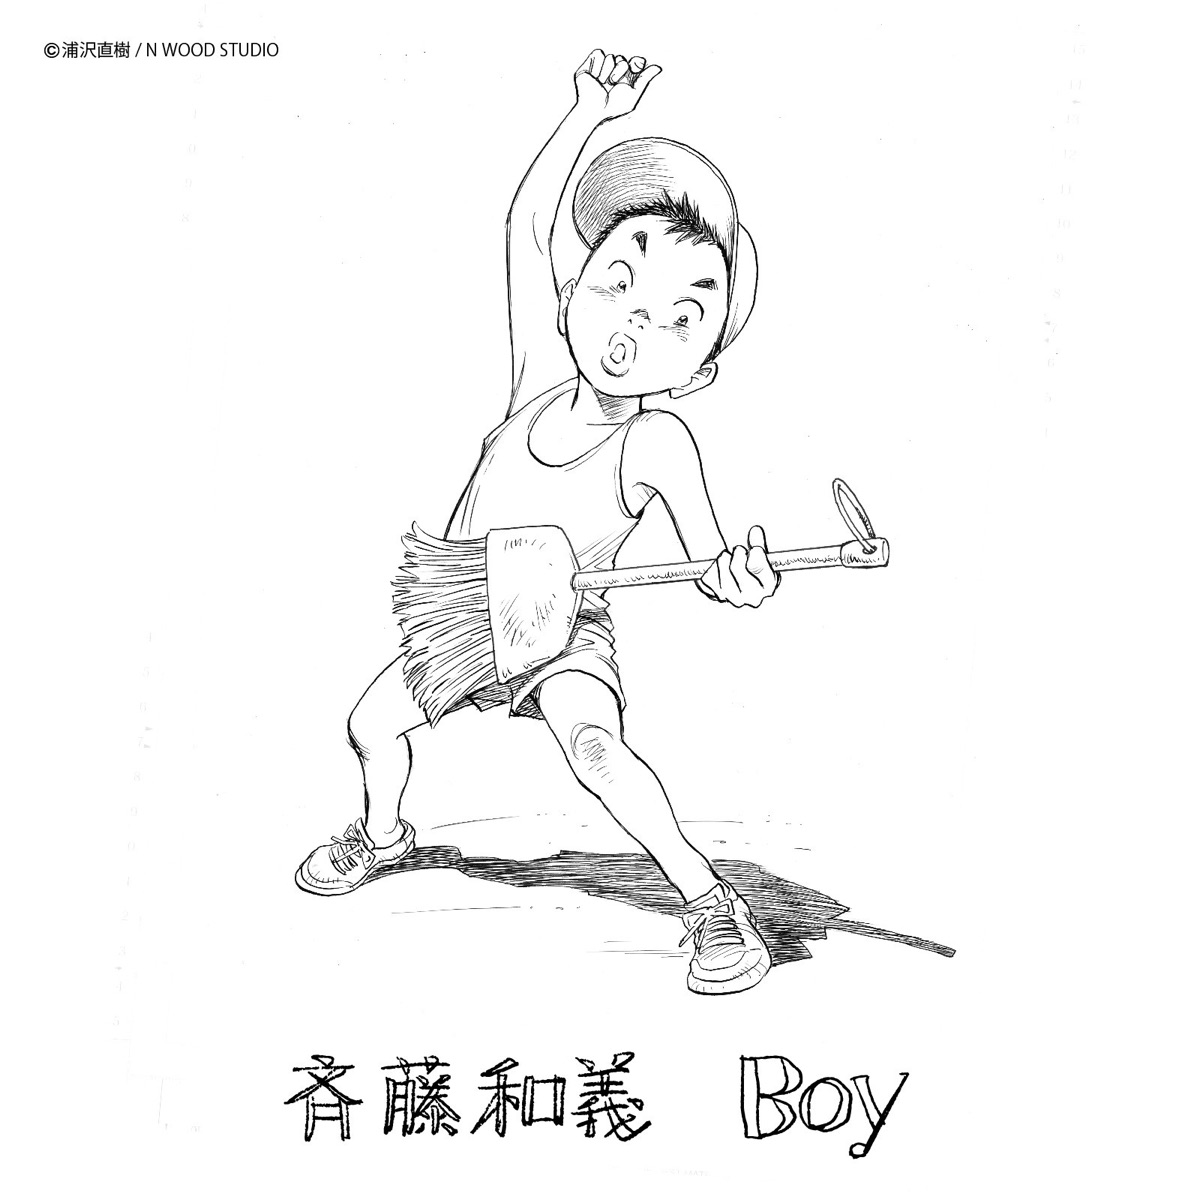 『斉藤和義 - Boy』収録の『Boy』ジャケット